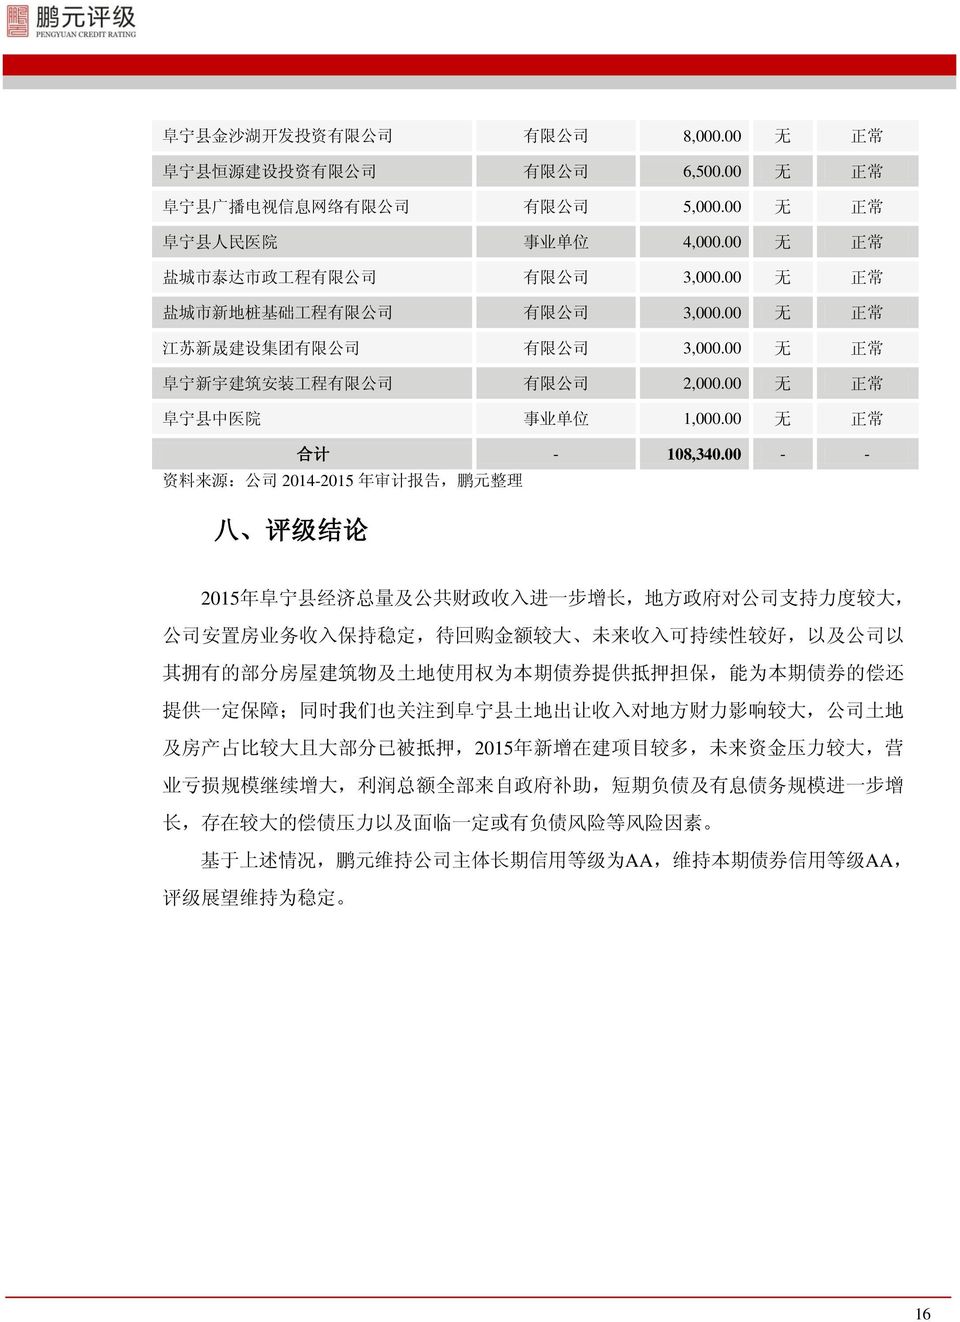 00 无 正 常 阜 宁 县 中 医 院 事 业 单 位 1,000.00 无 正 常 合 计 - 108,340.